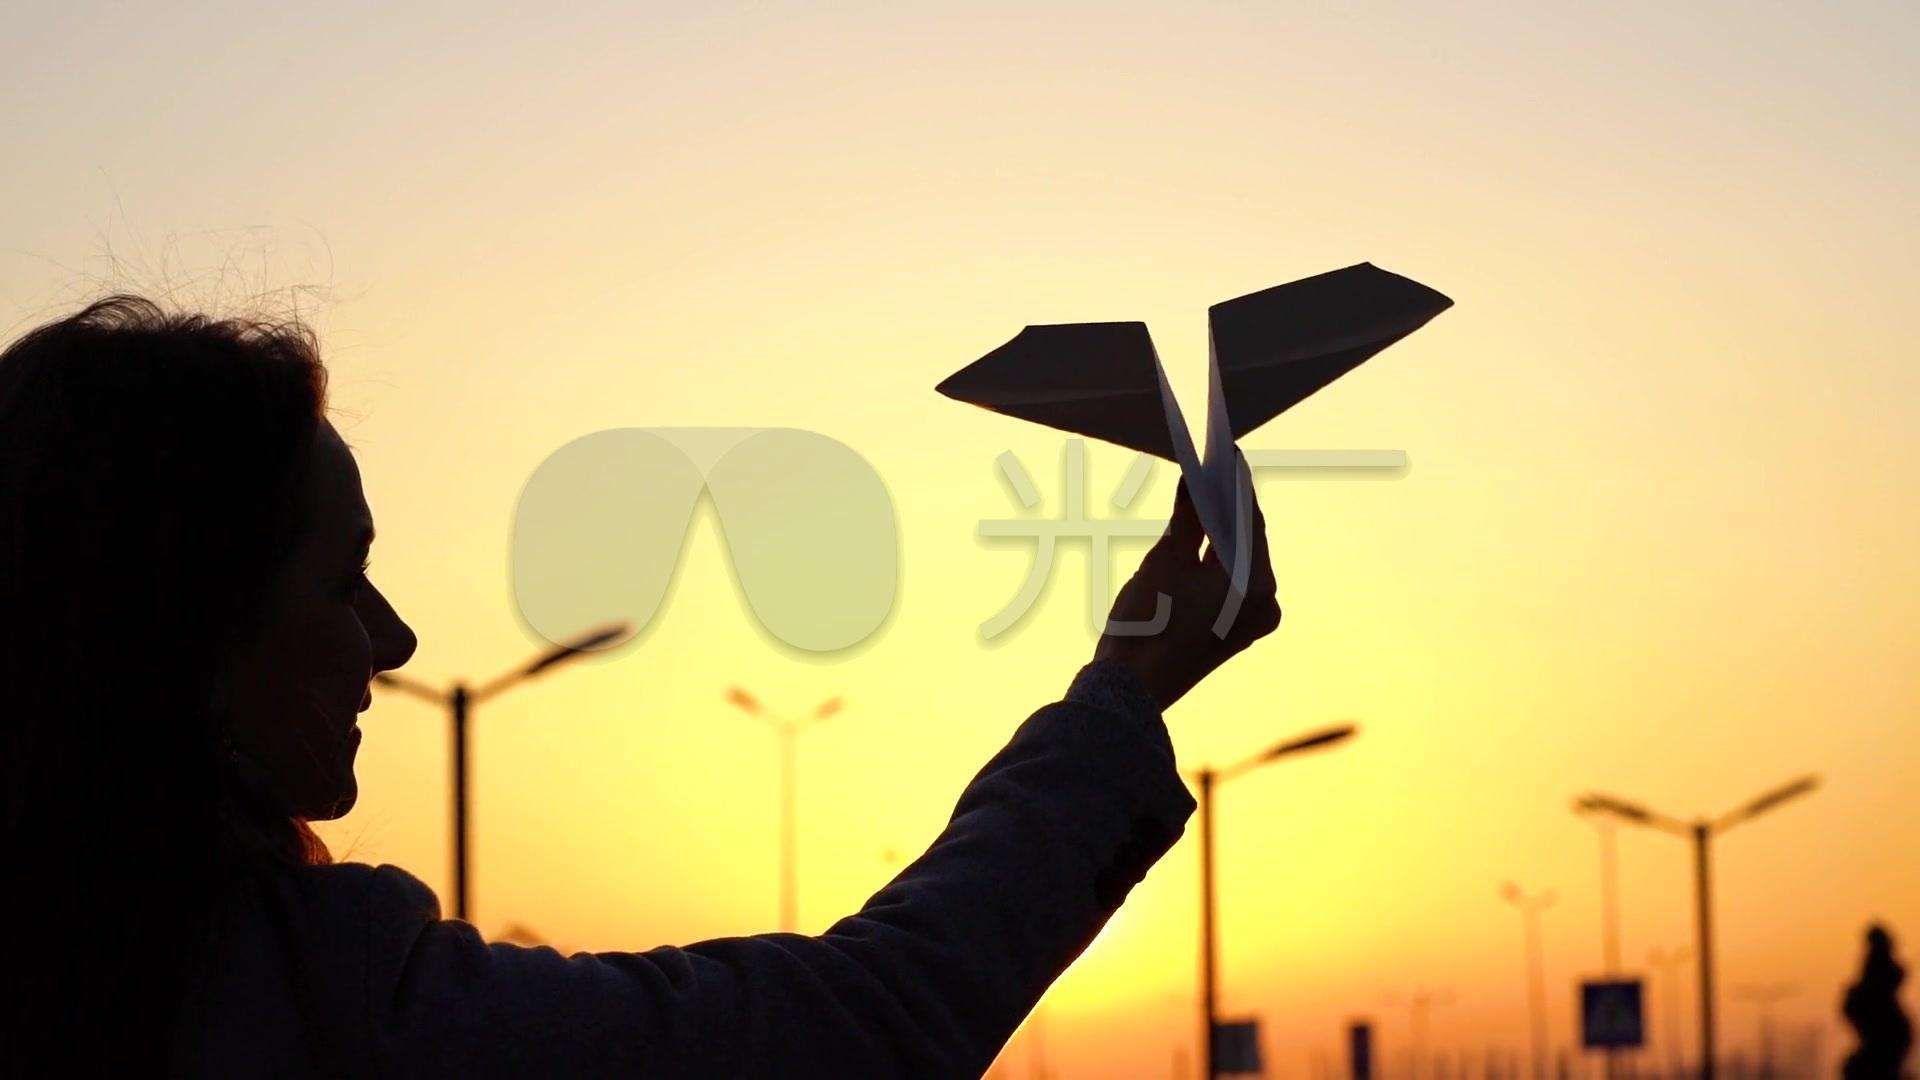 [是纸飞机吗]纸飞机是什么样子的